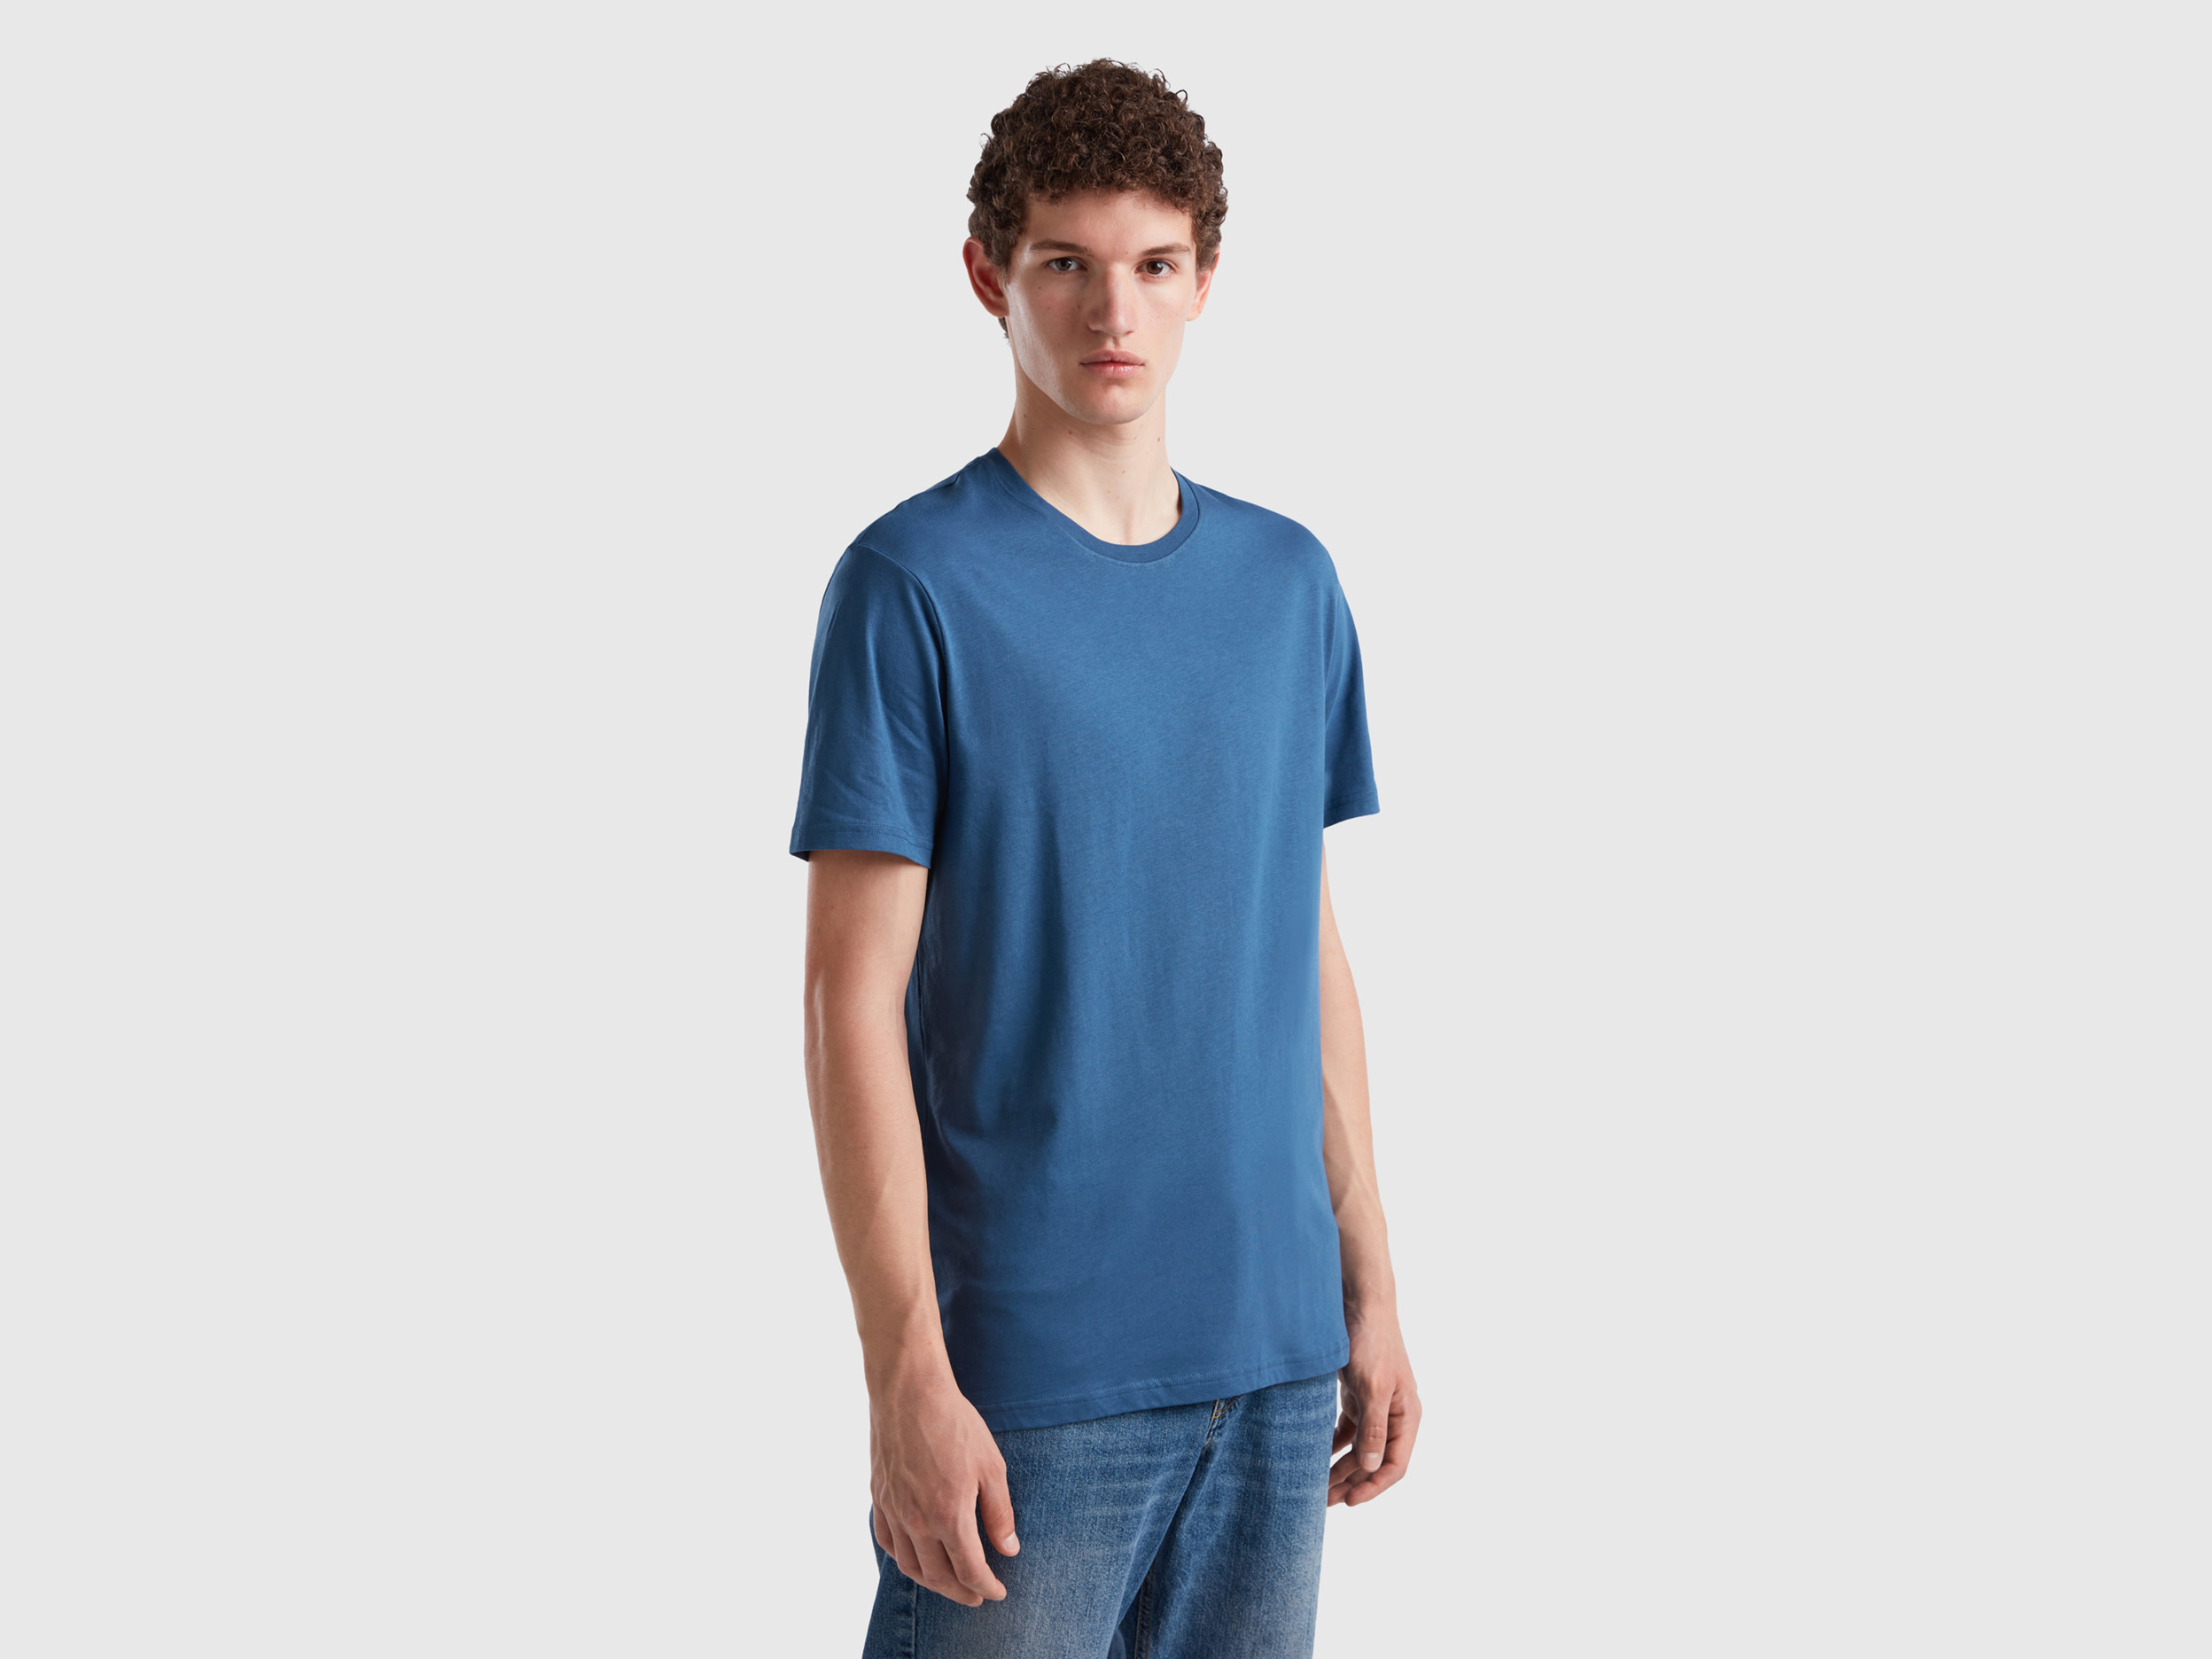 Benetton, Air Force Blue T-shirt, size XXL, Air Force Blue, Men